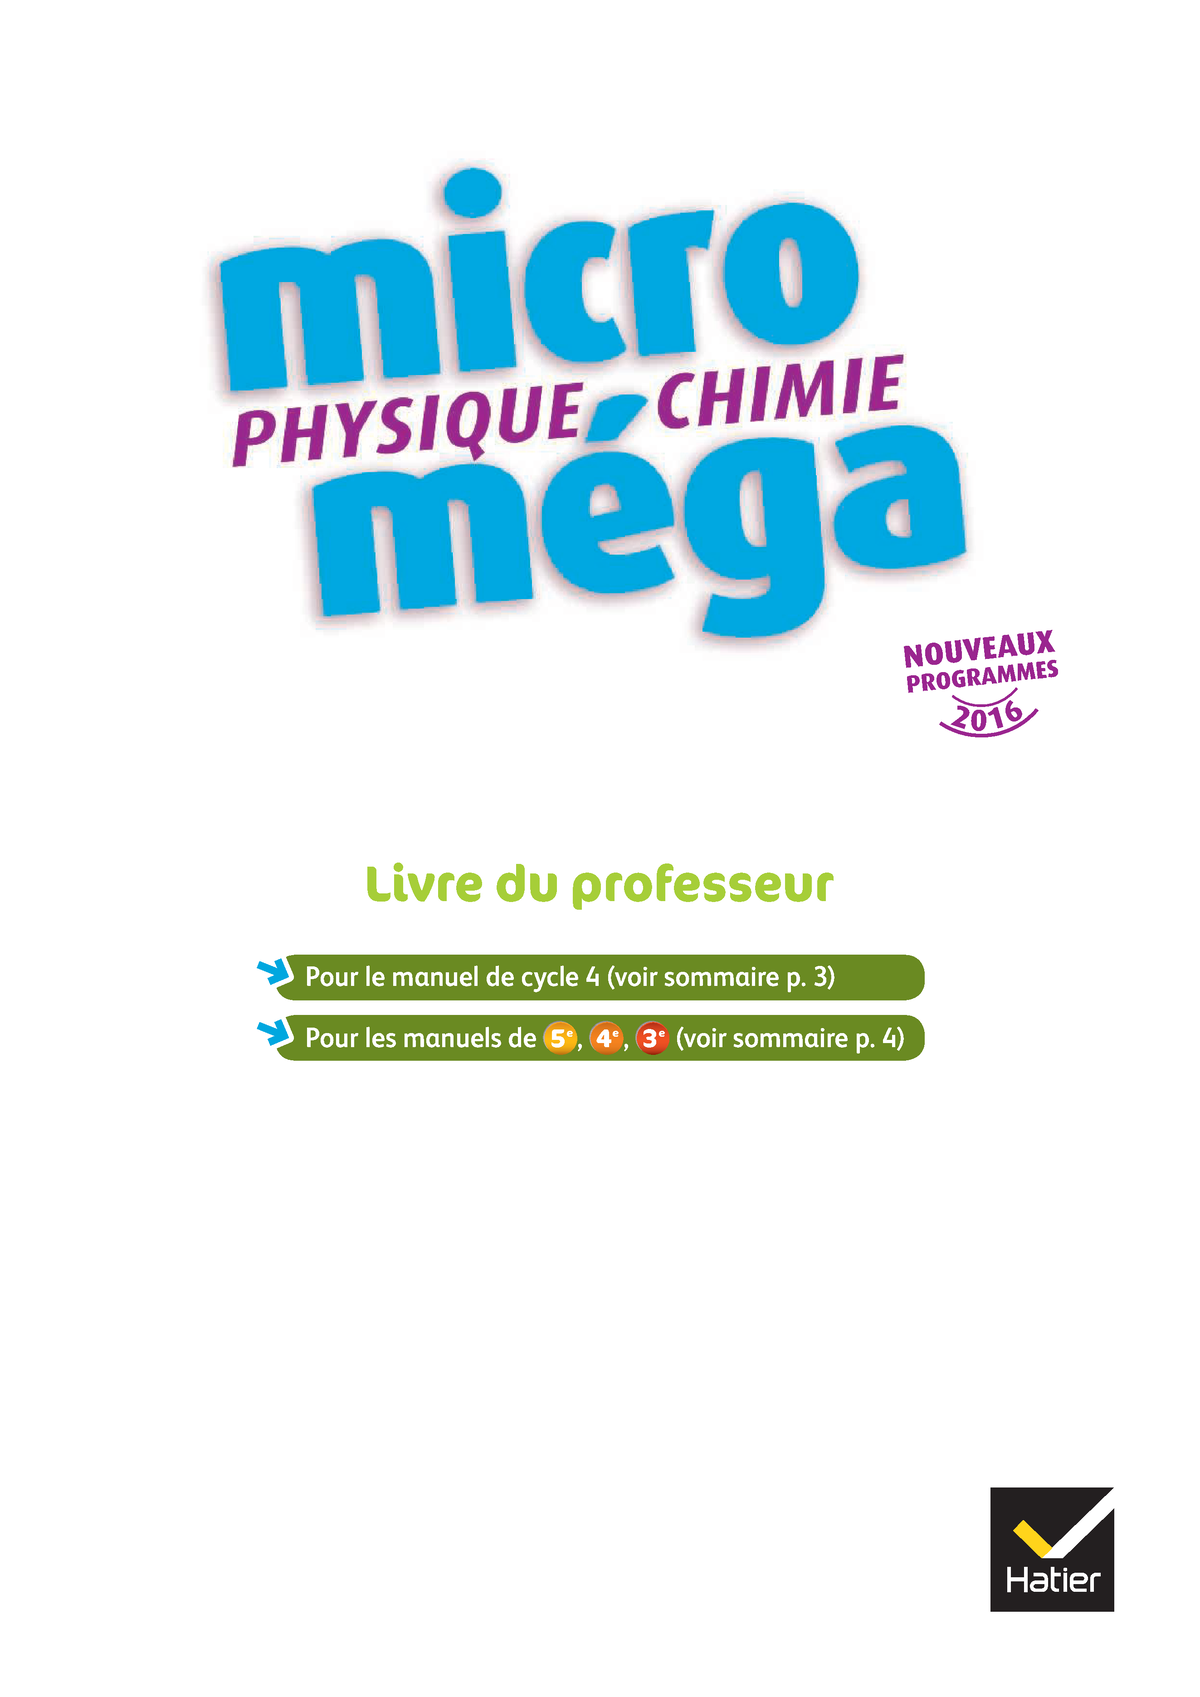 Micro Mega Physique Chimie 4eme Corrigé LDP Physique Chimie Micromega Cycle 4 ed 2017 pdf - NOUVEAUX PROGRAMMES  2016 Livre du professeur - Studocu